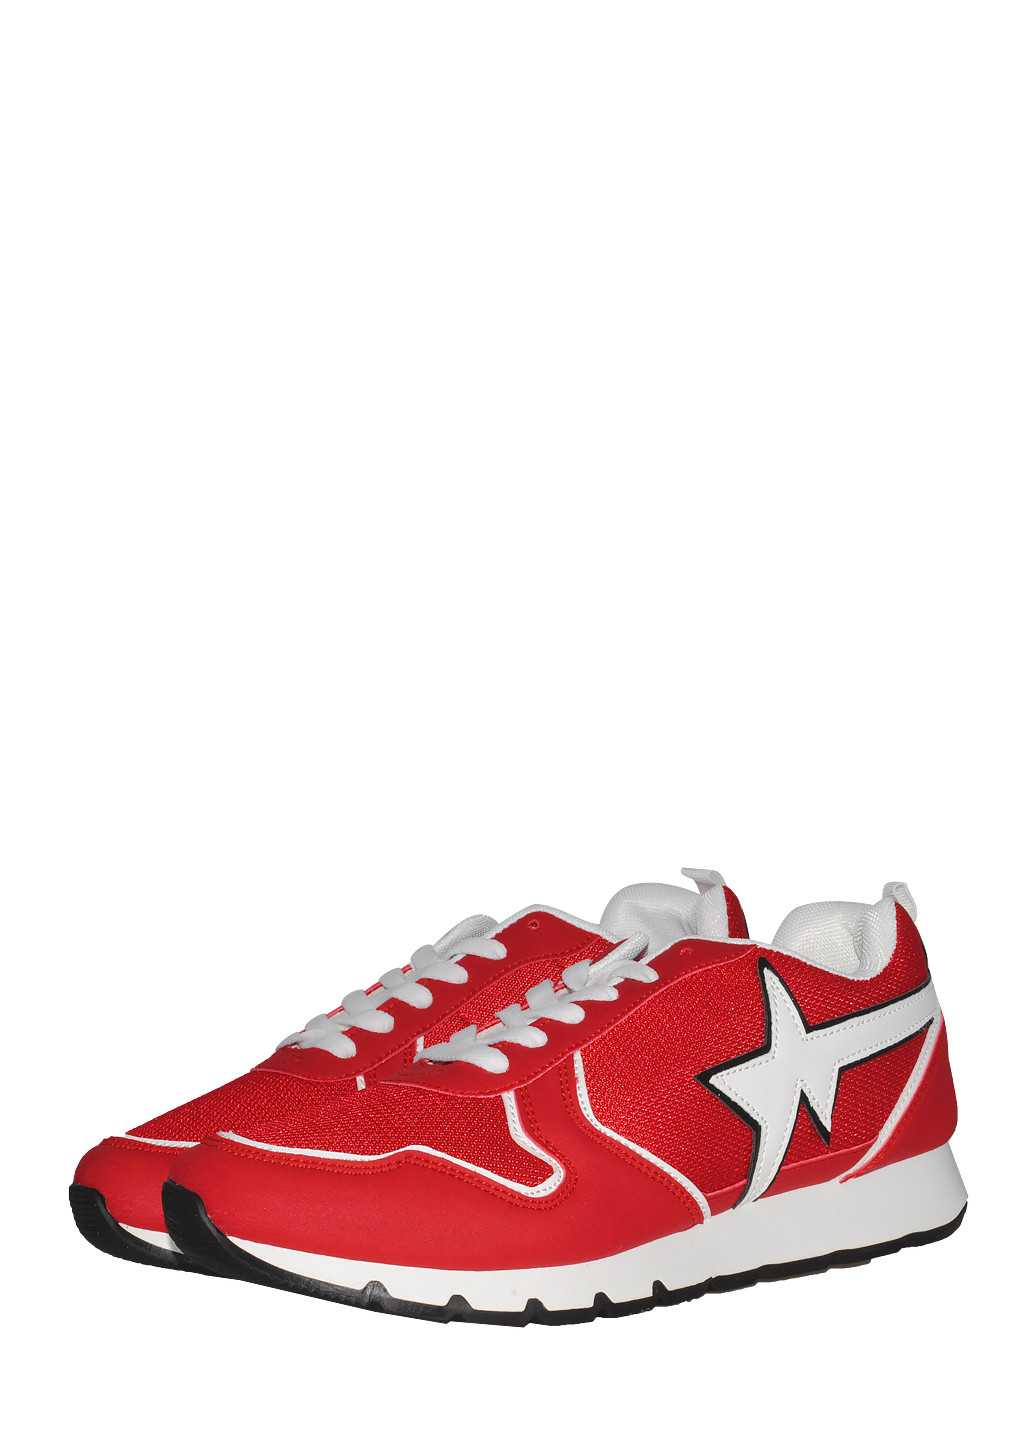 Червоні осінні кросівки u4416-6 red Jomix